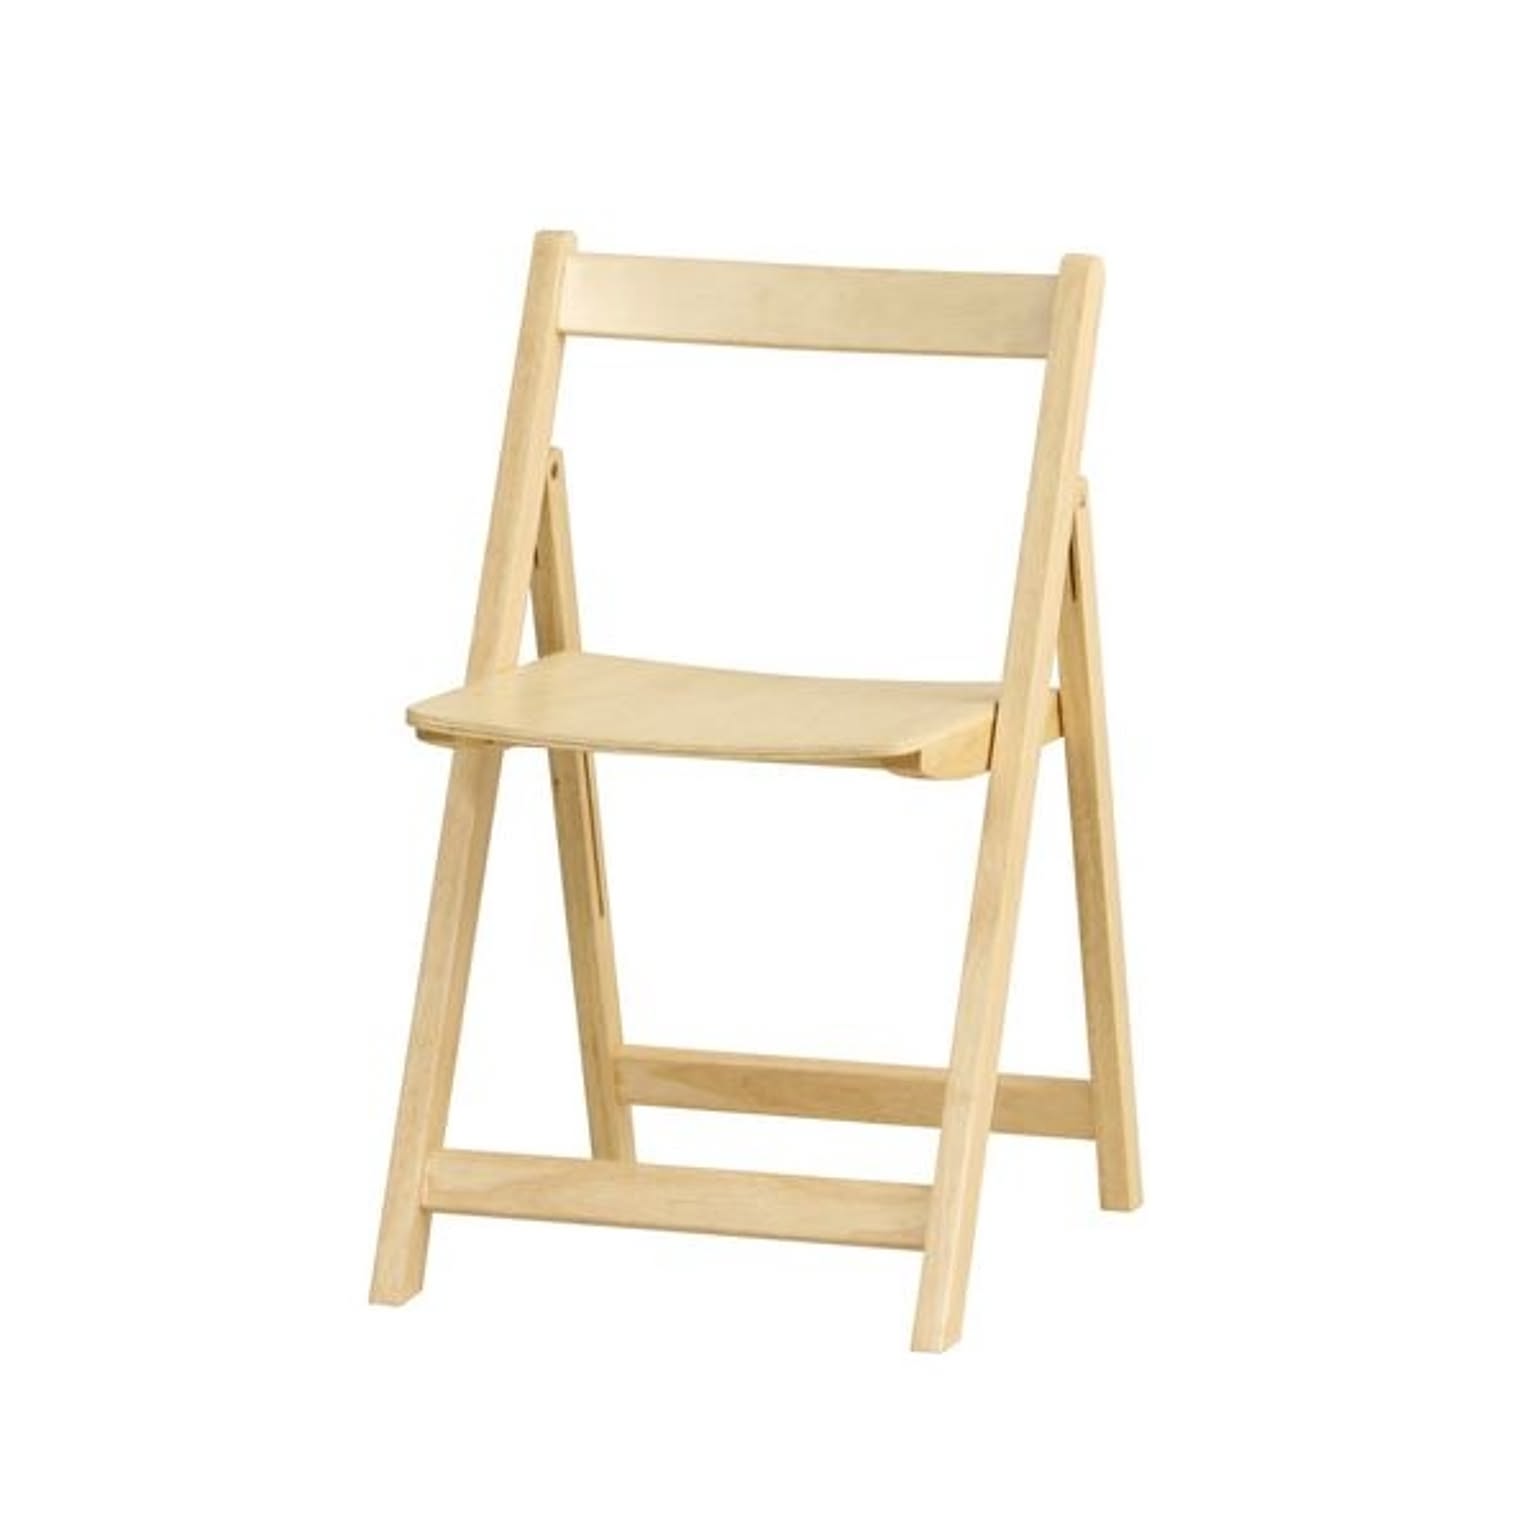 折りたたみ椅子/フォールディングチェア 【ナチュラル】 幅420mm 木製 〔リビング ダイニング〕 完成品【代引不可】